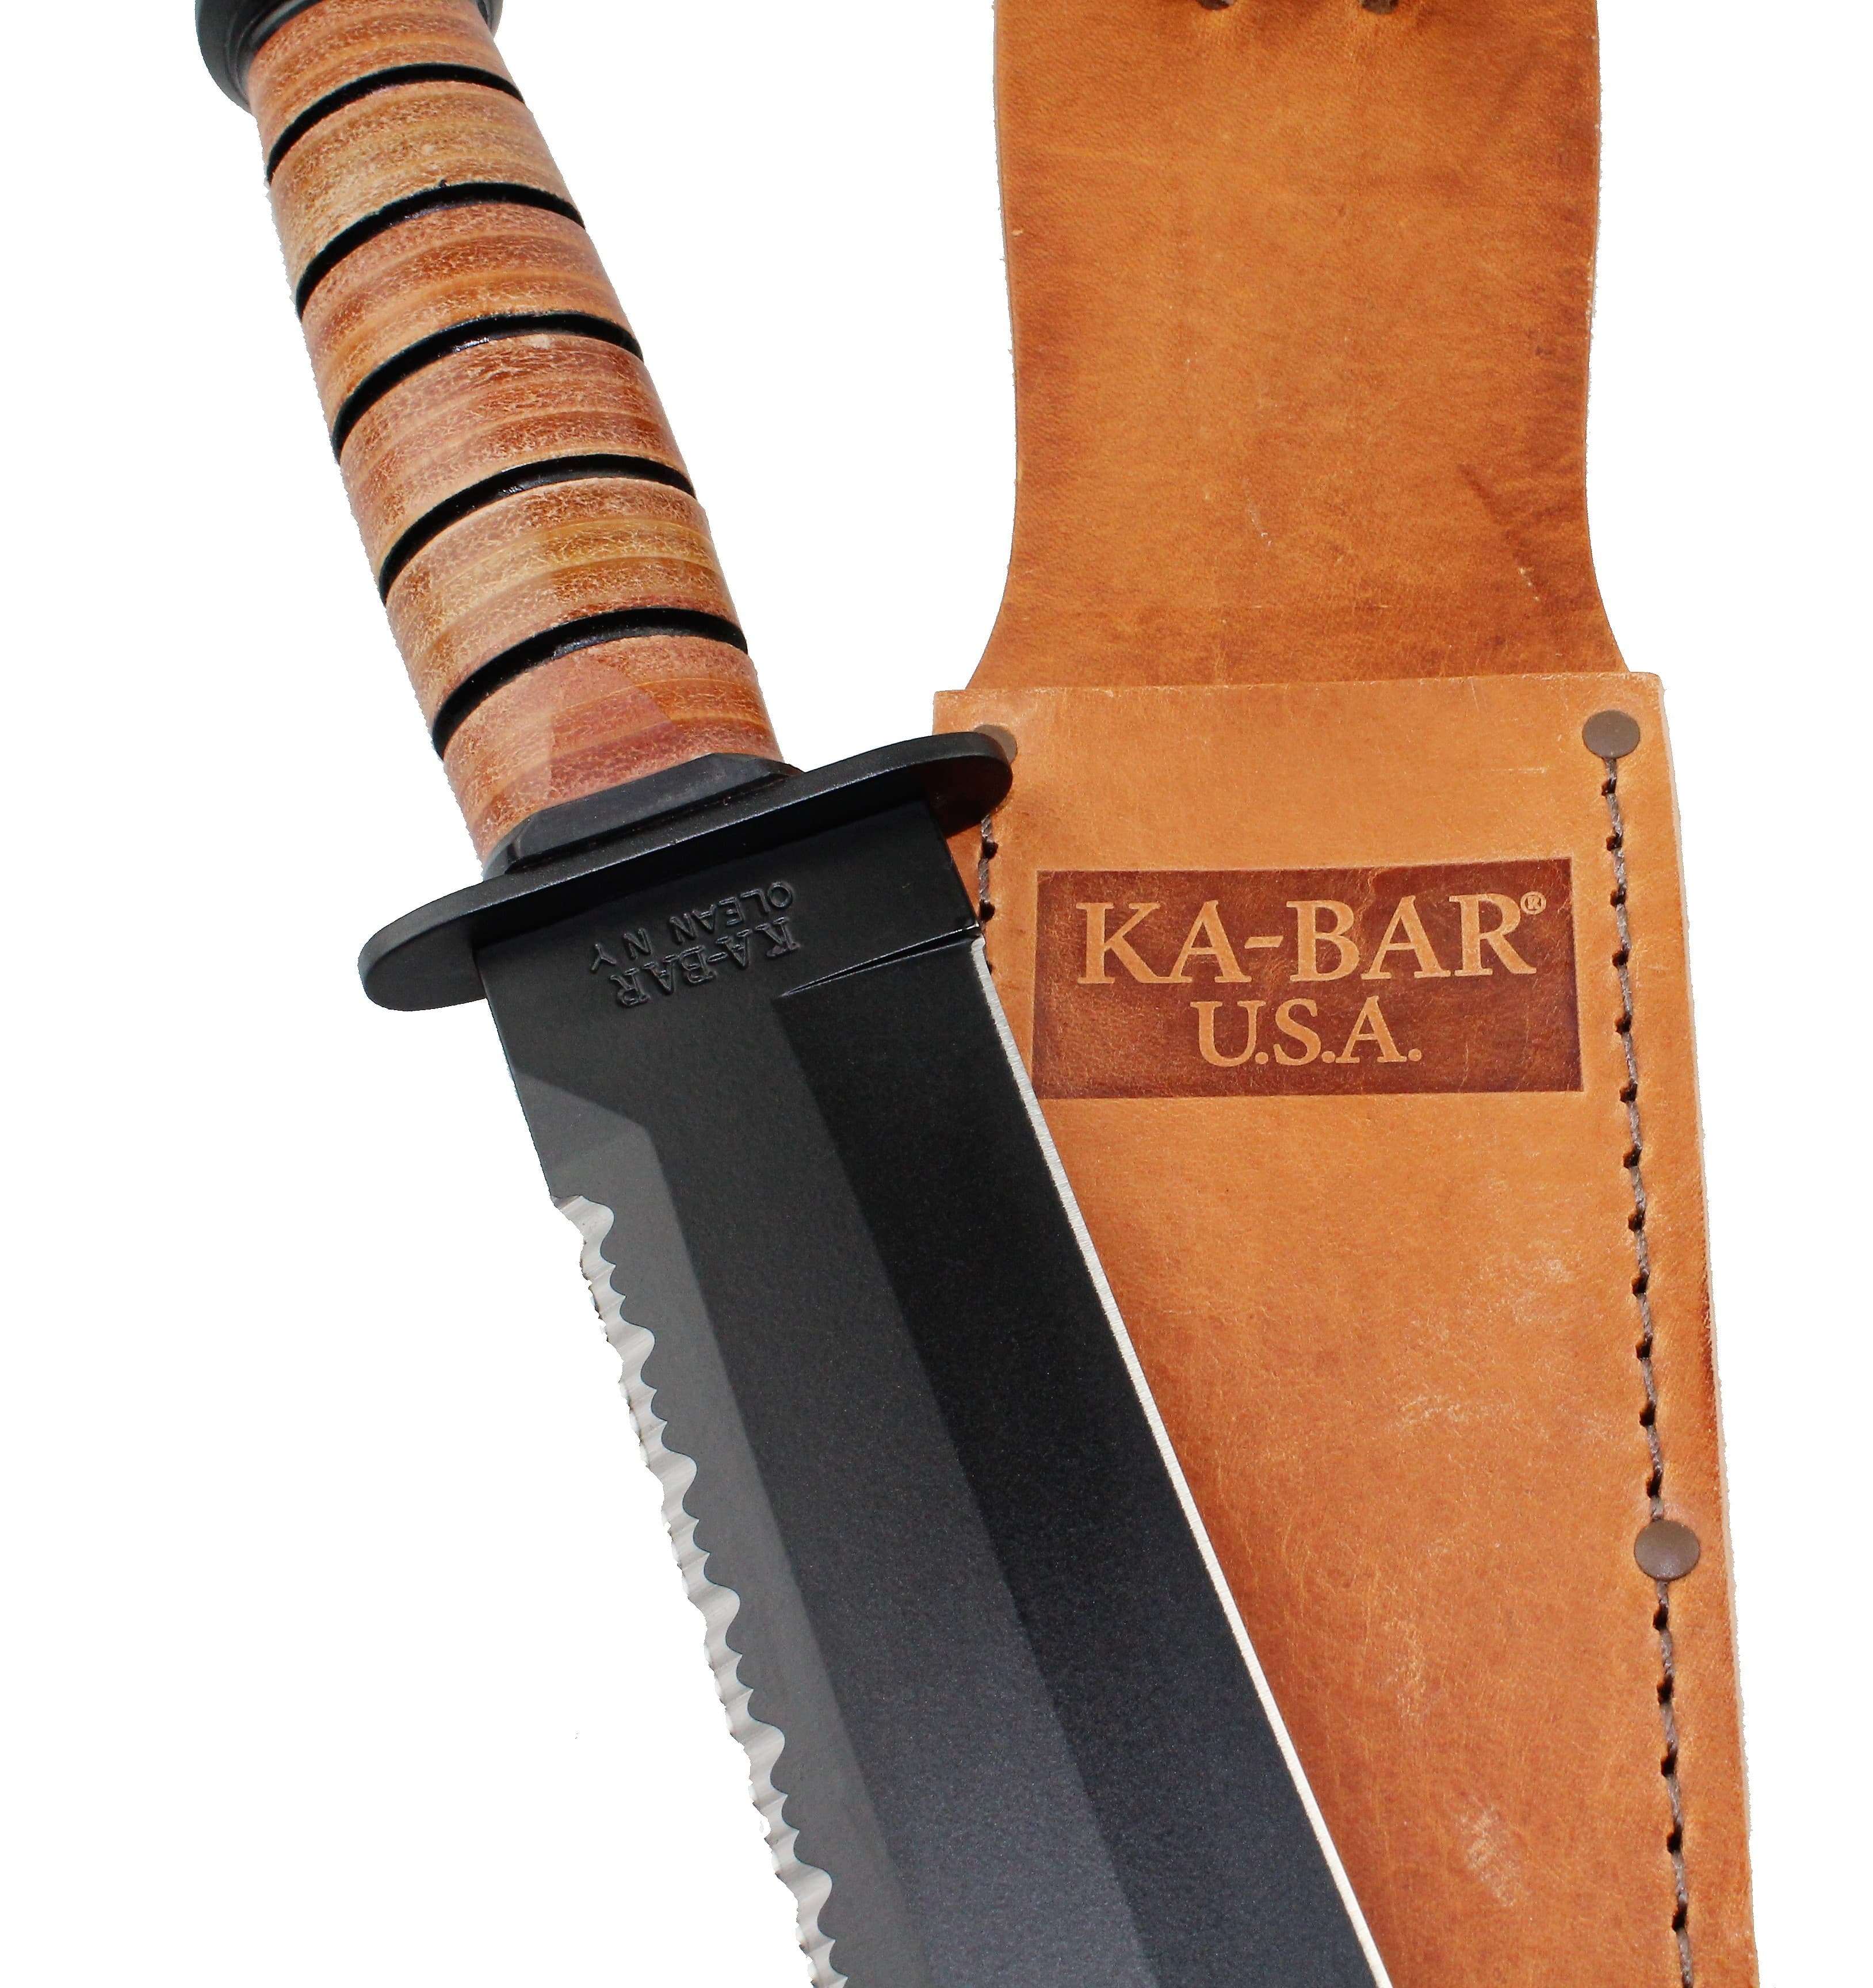 KA-BAR 2217 Big Brother Knife